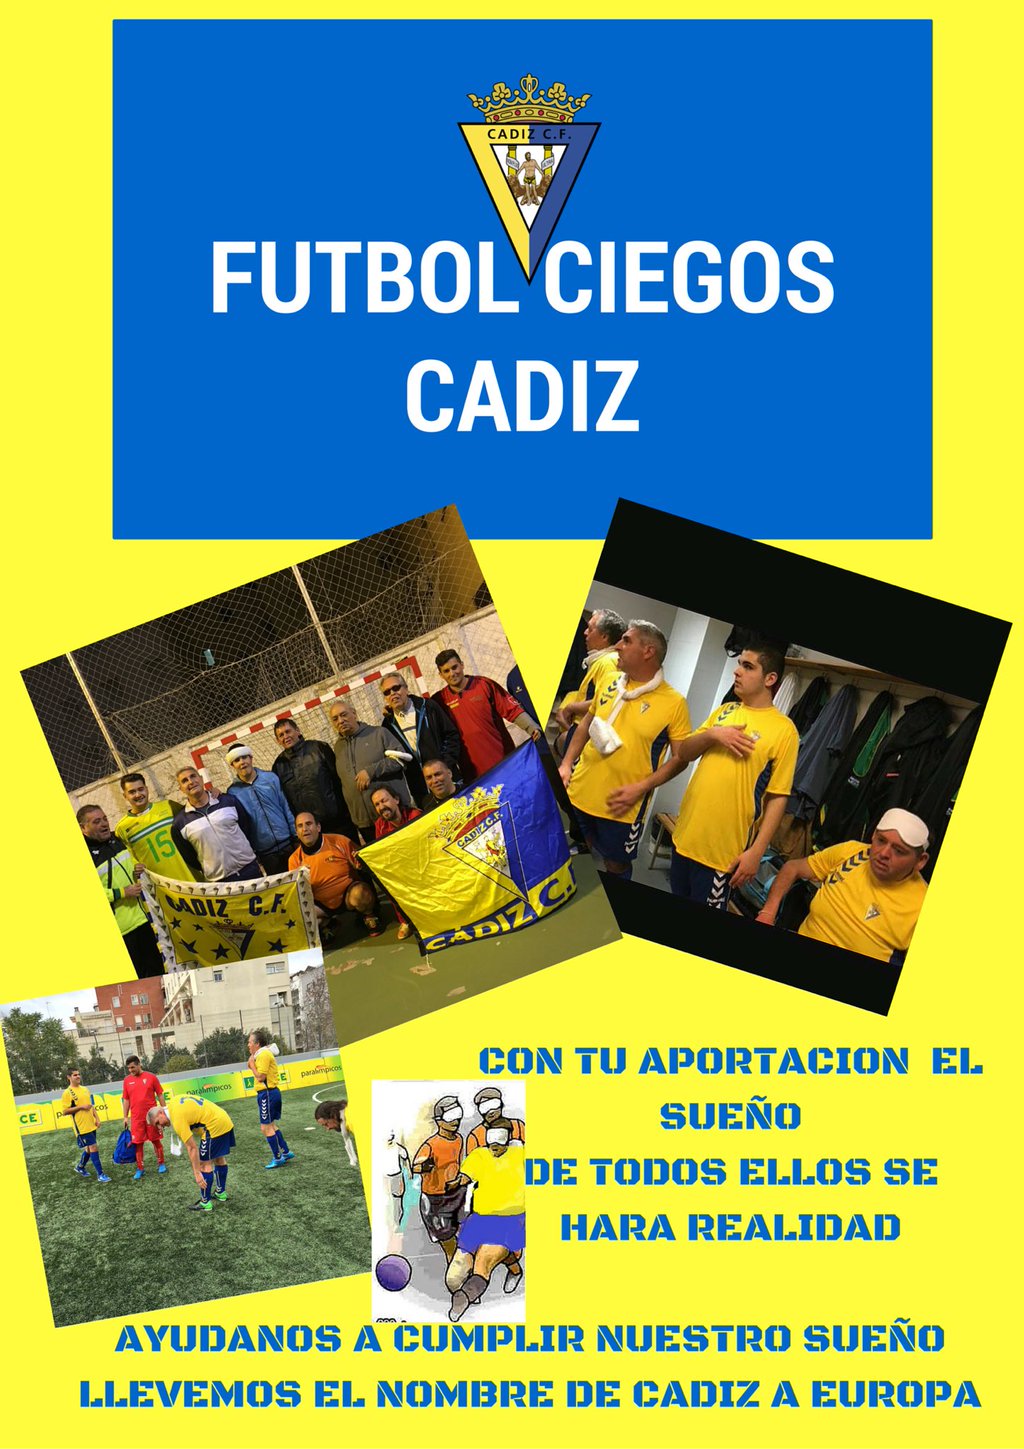 Futbol Ciego Cádiz